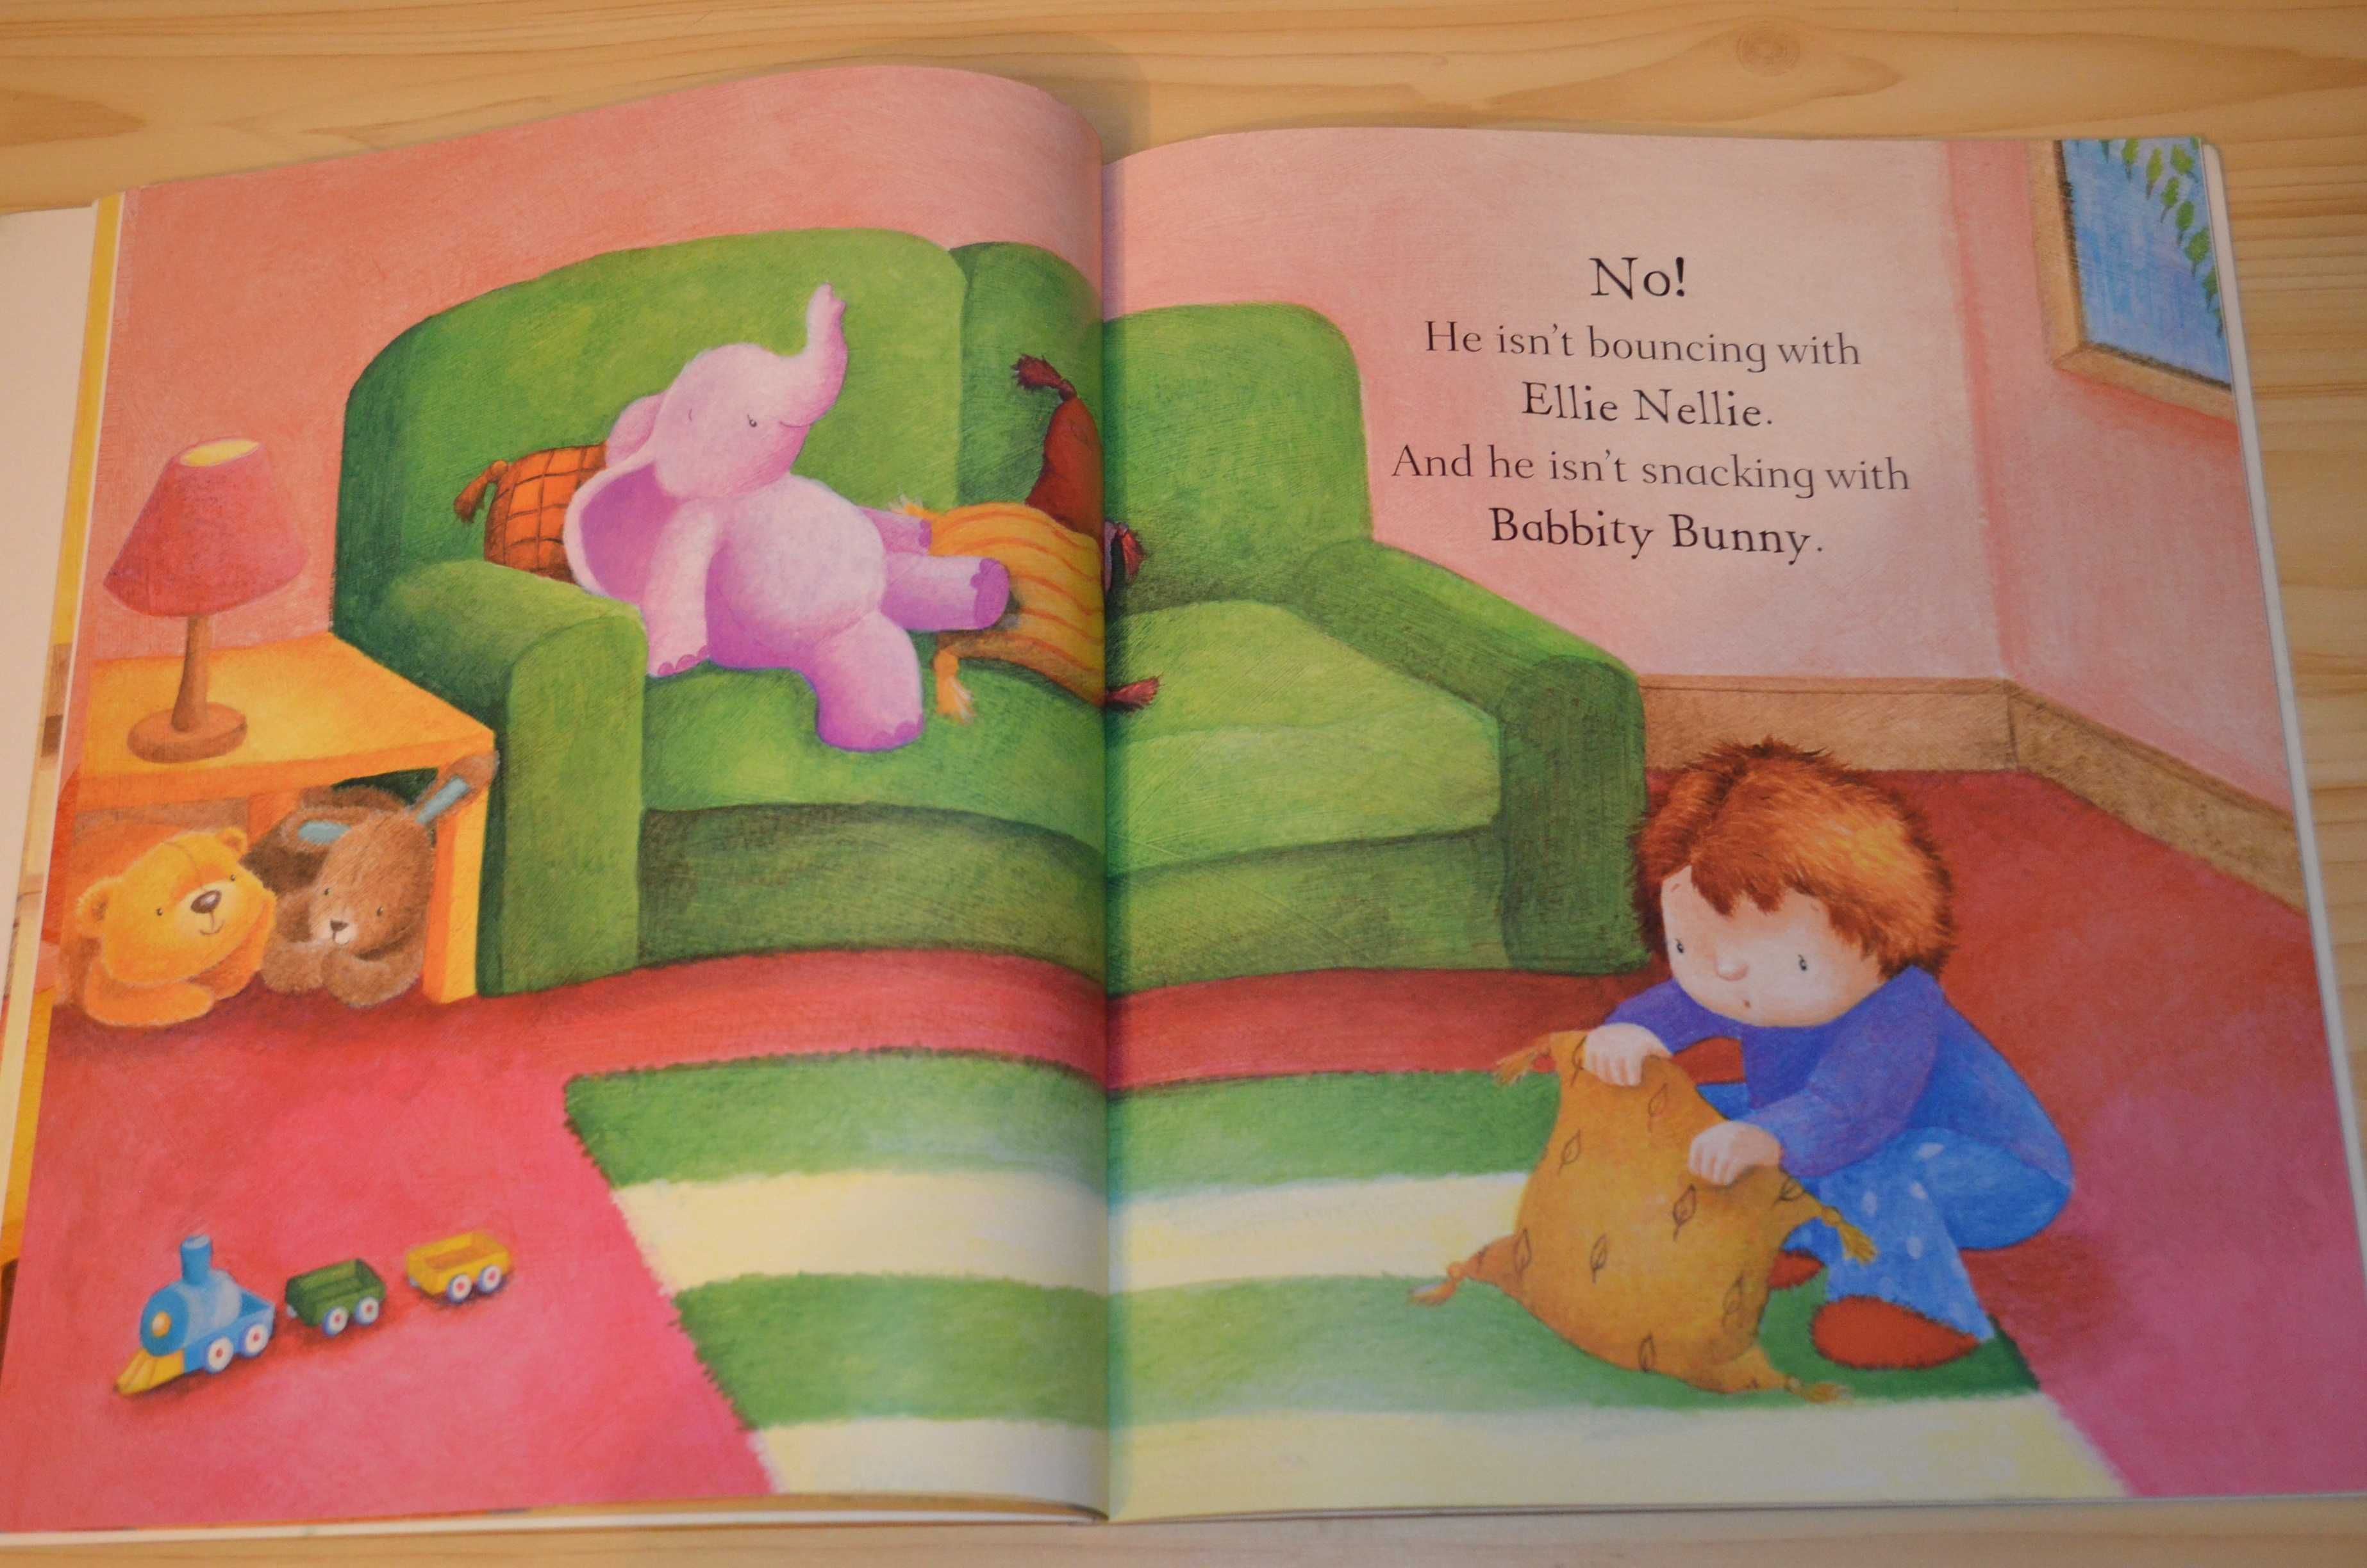 Where, oh where is huggle buggle bear, дитяча книга англійською